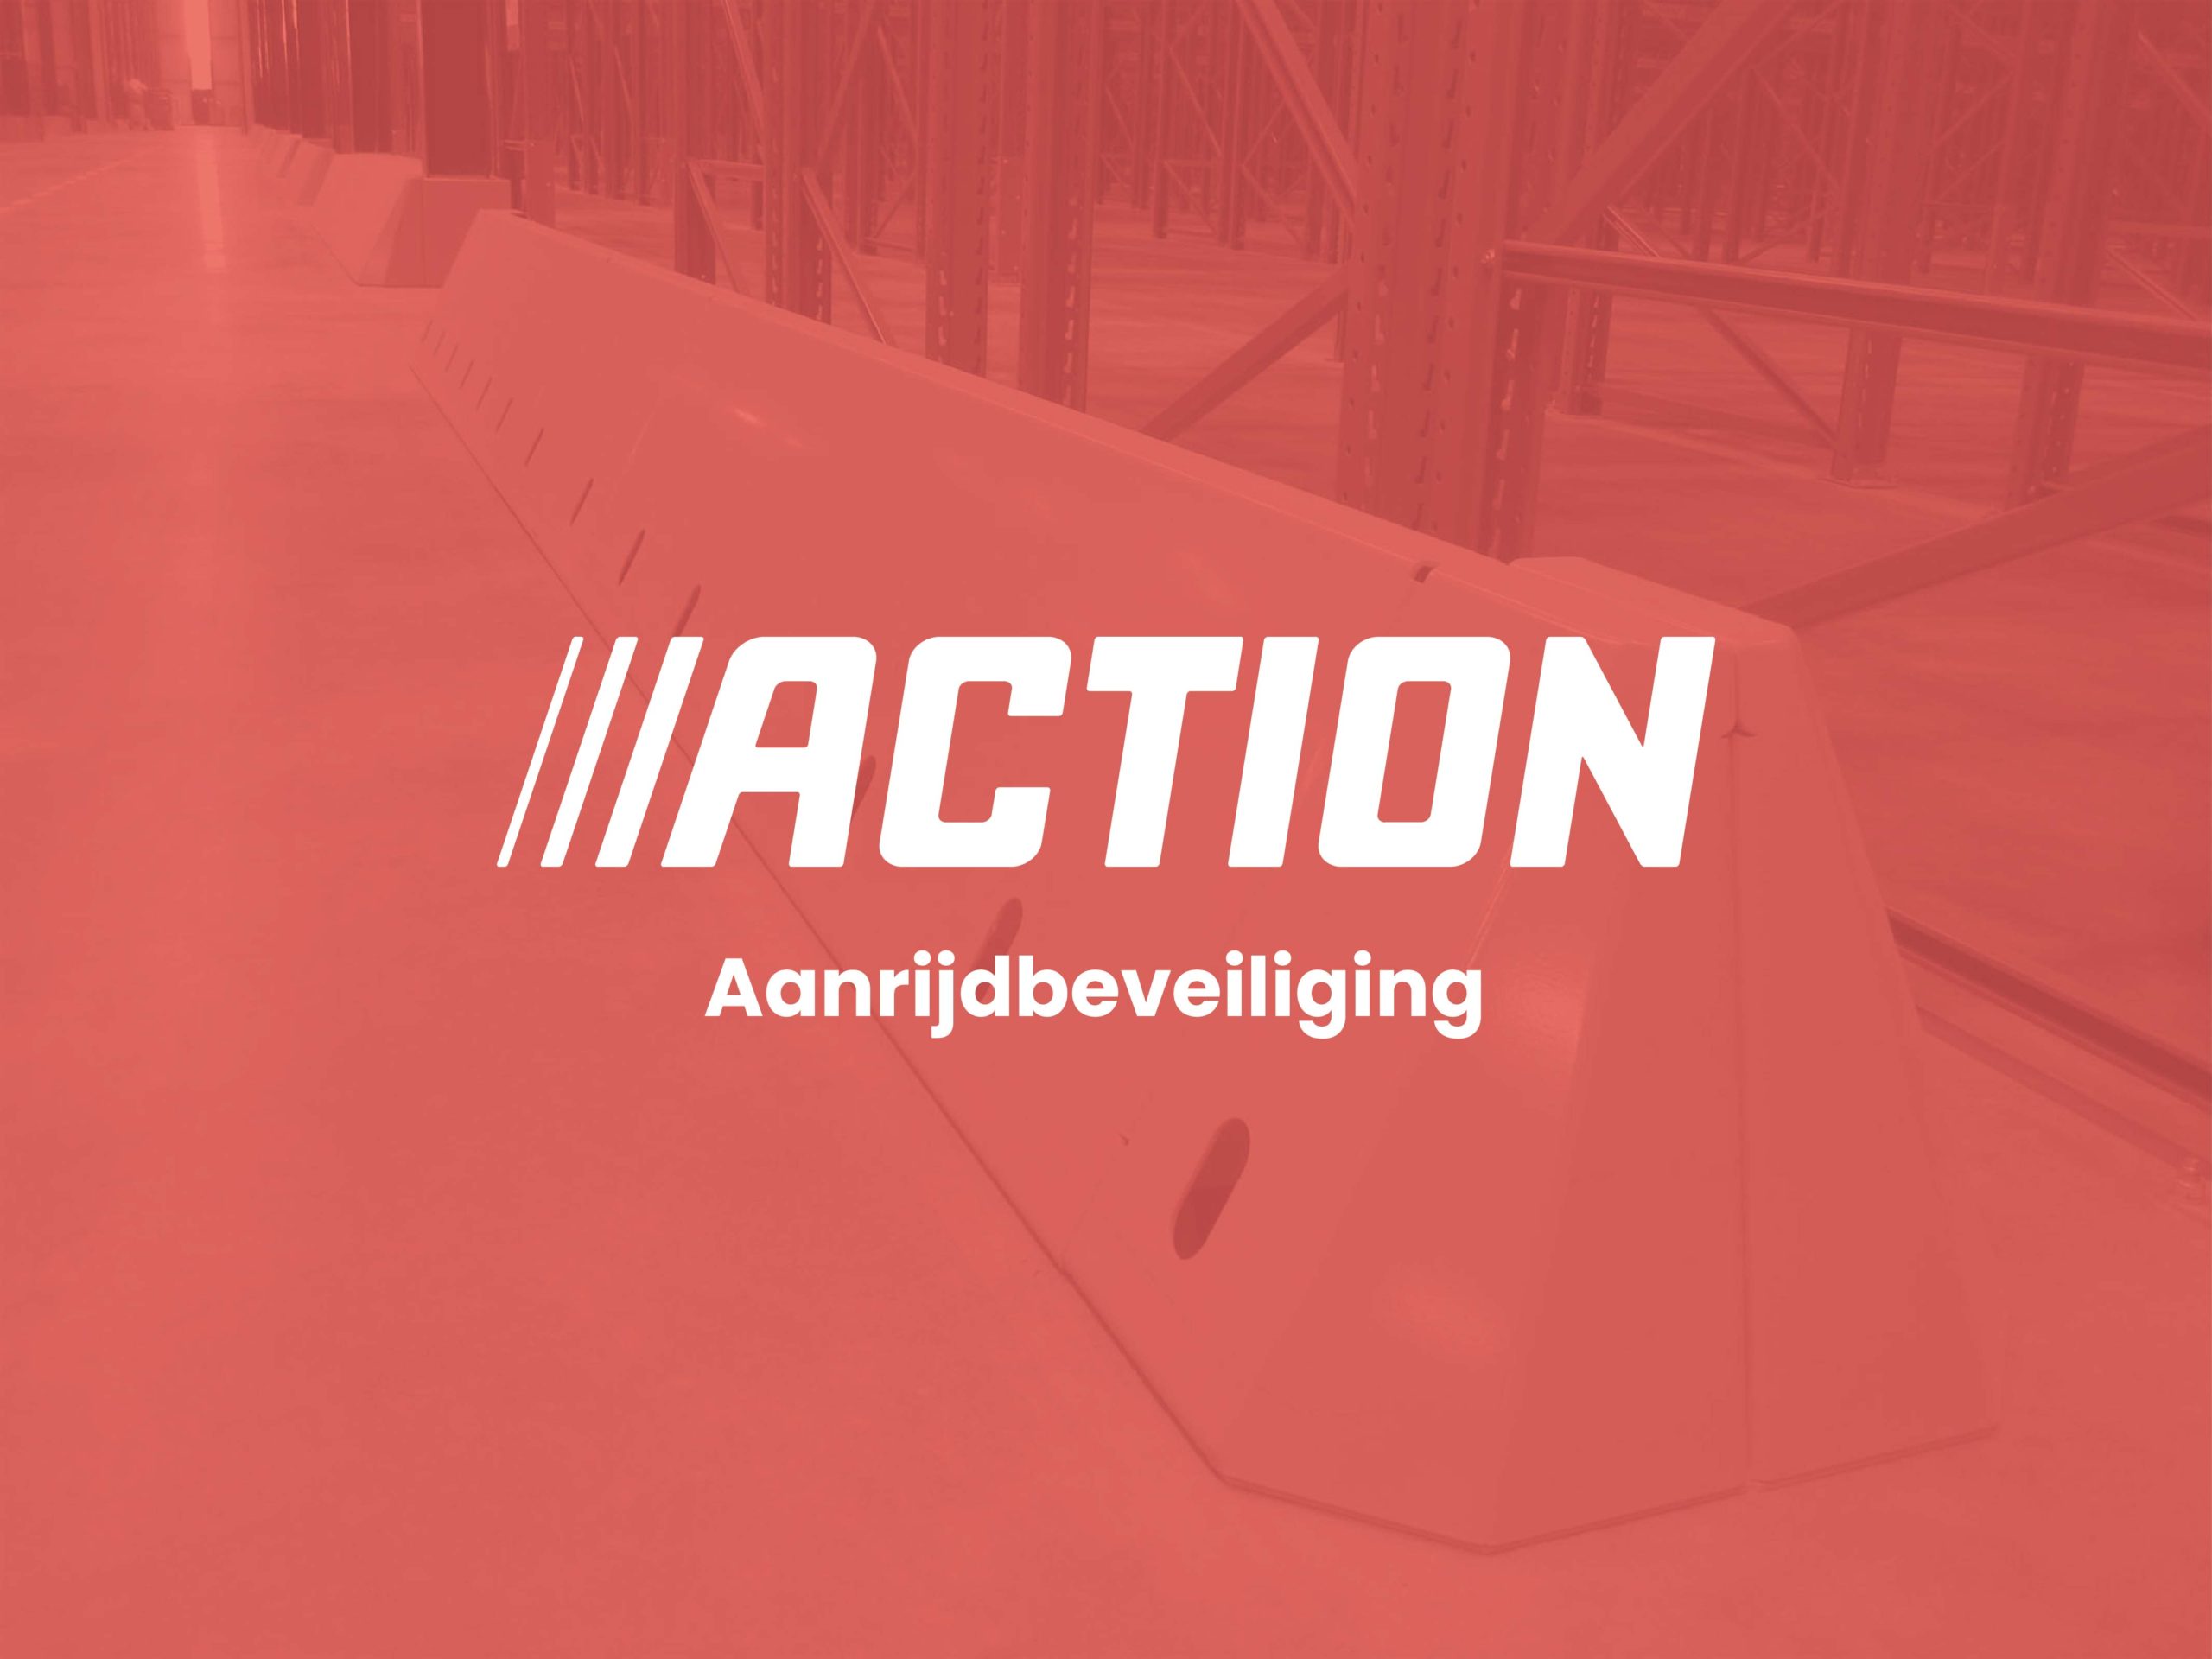 01-Action-Aanrijdbeveiliging-Blom-Opmeer-Cover